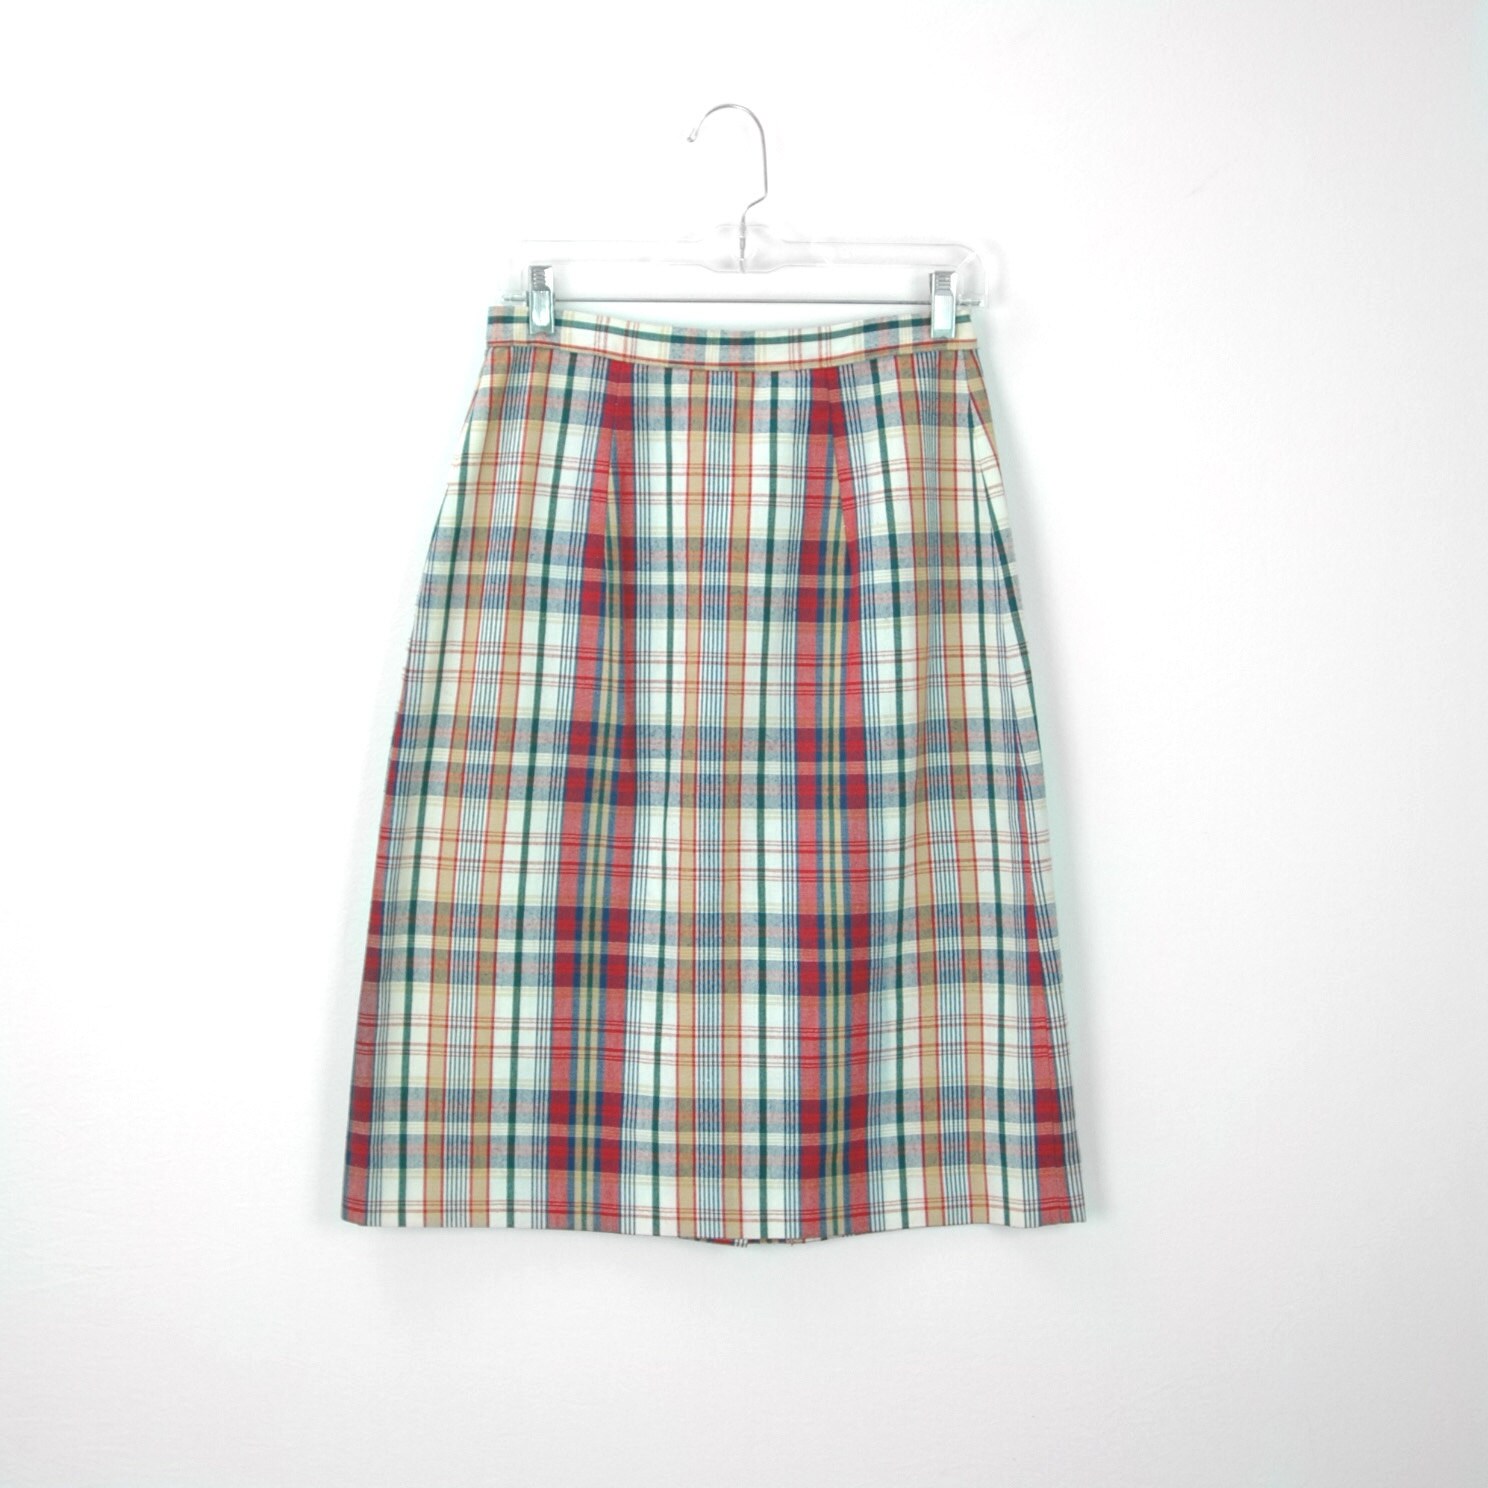 70s Plaid Skirt Button Up High Waist Below the Knee Skirt | Etsy